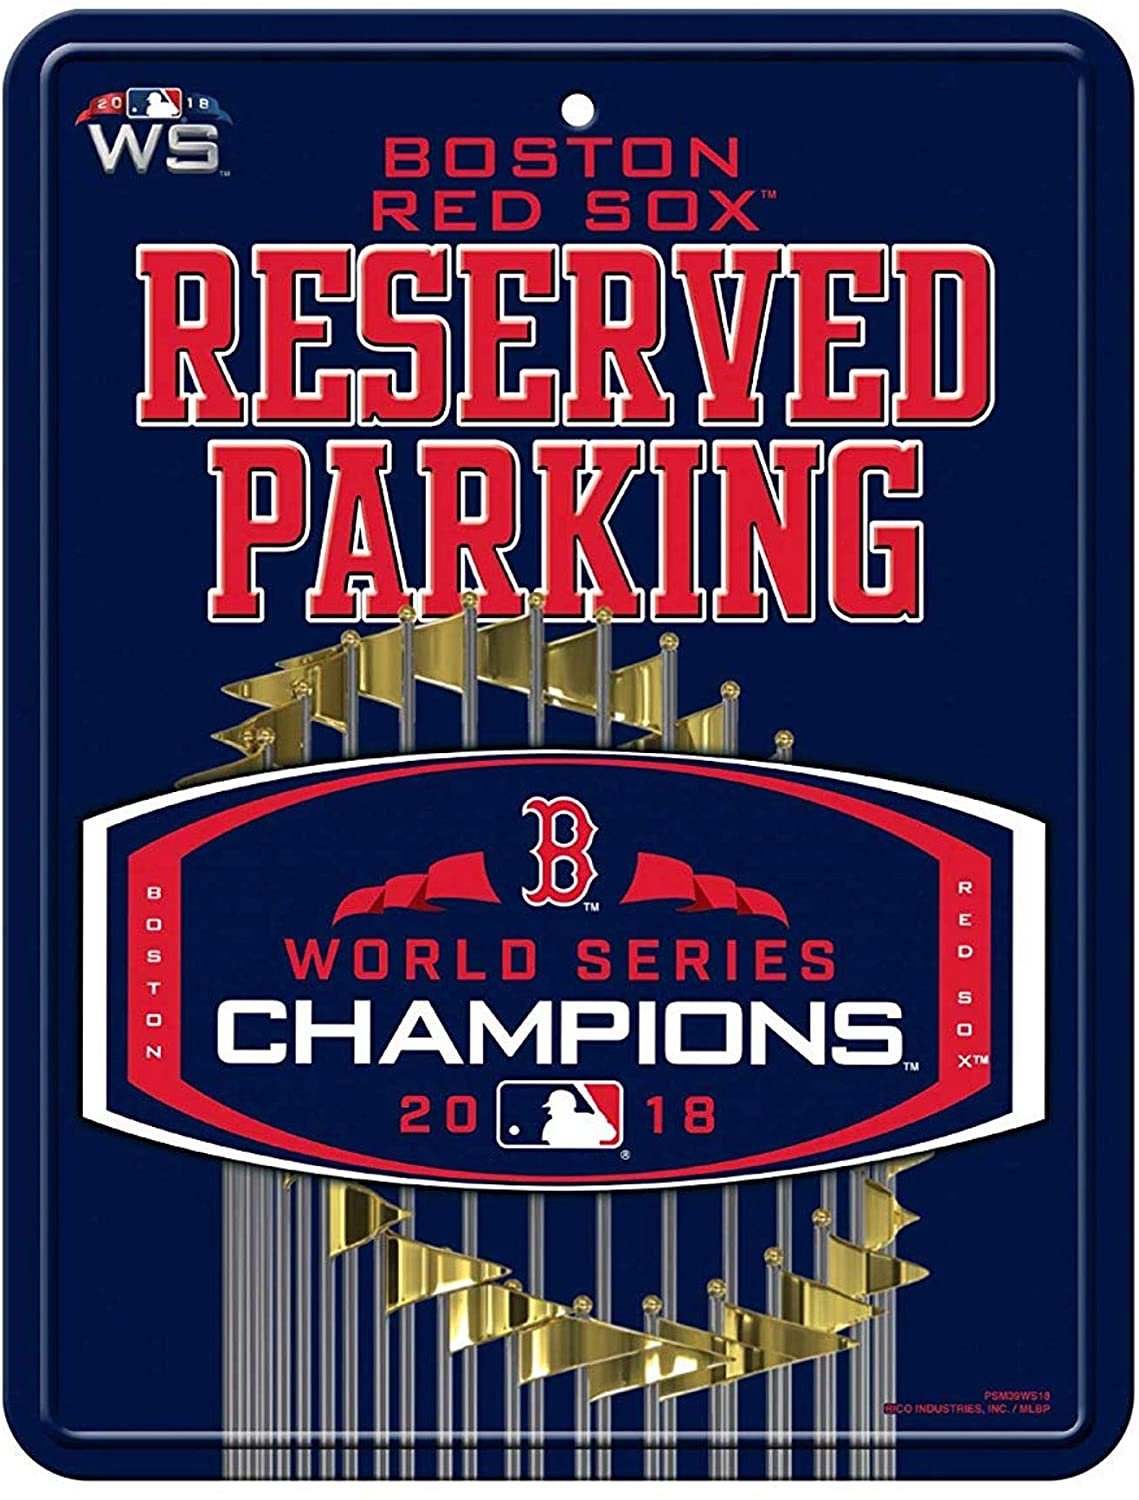 Boston Red Sox 2018 Champions 8x11 Metal Wall Novelty Parking Sign Baseball